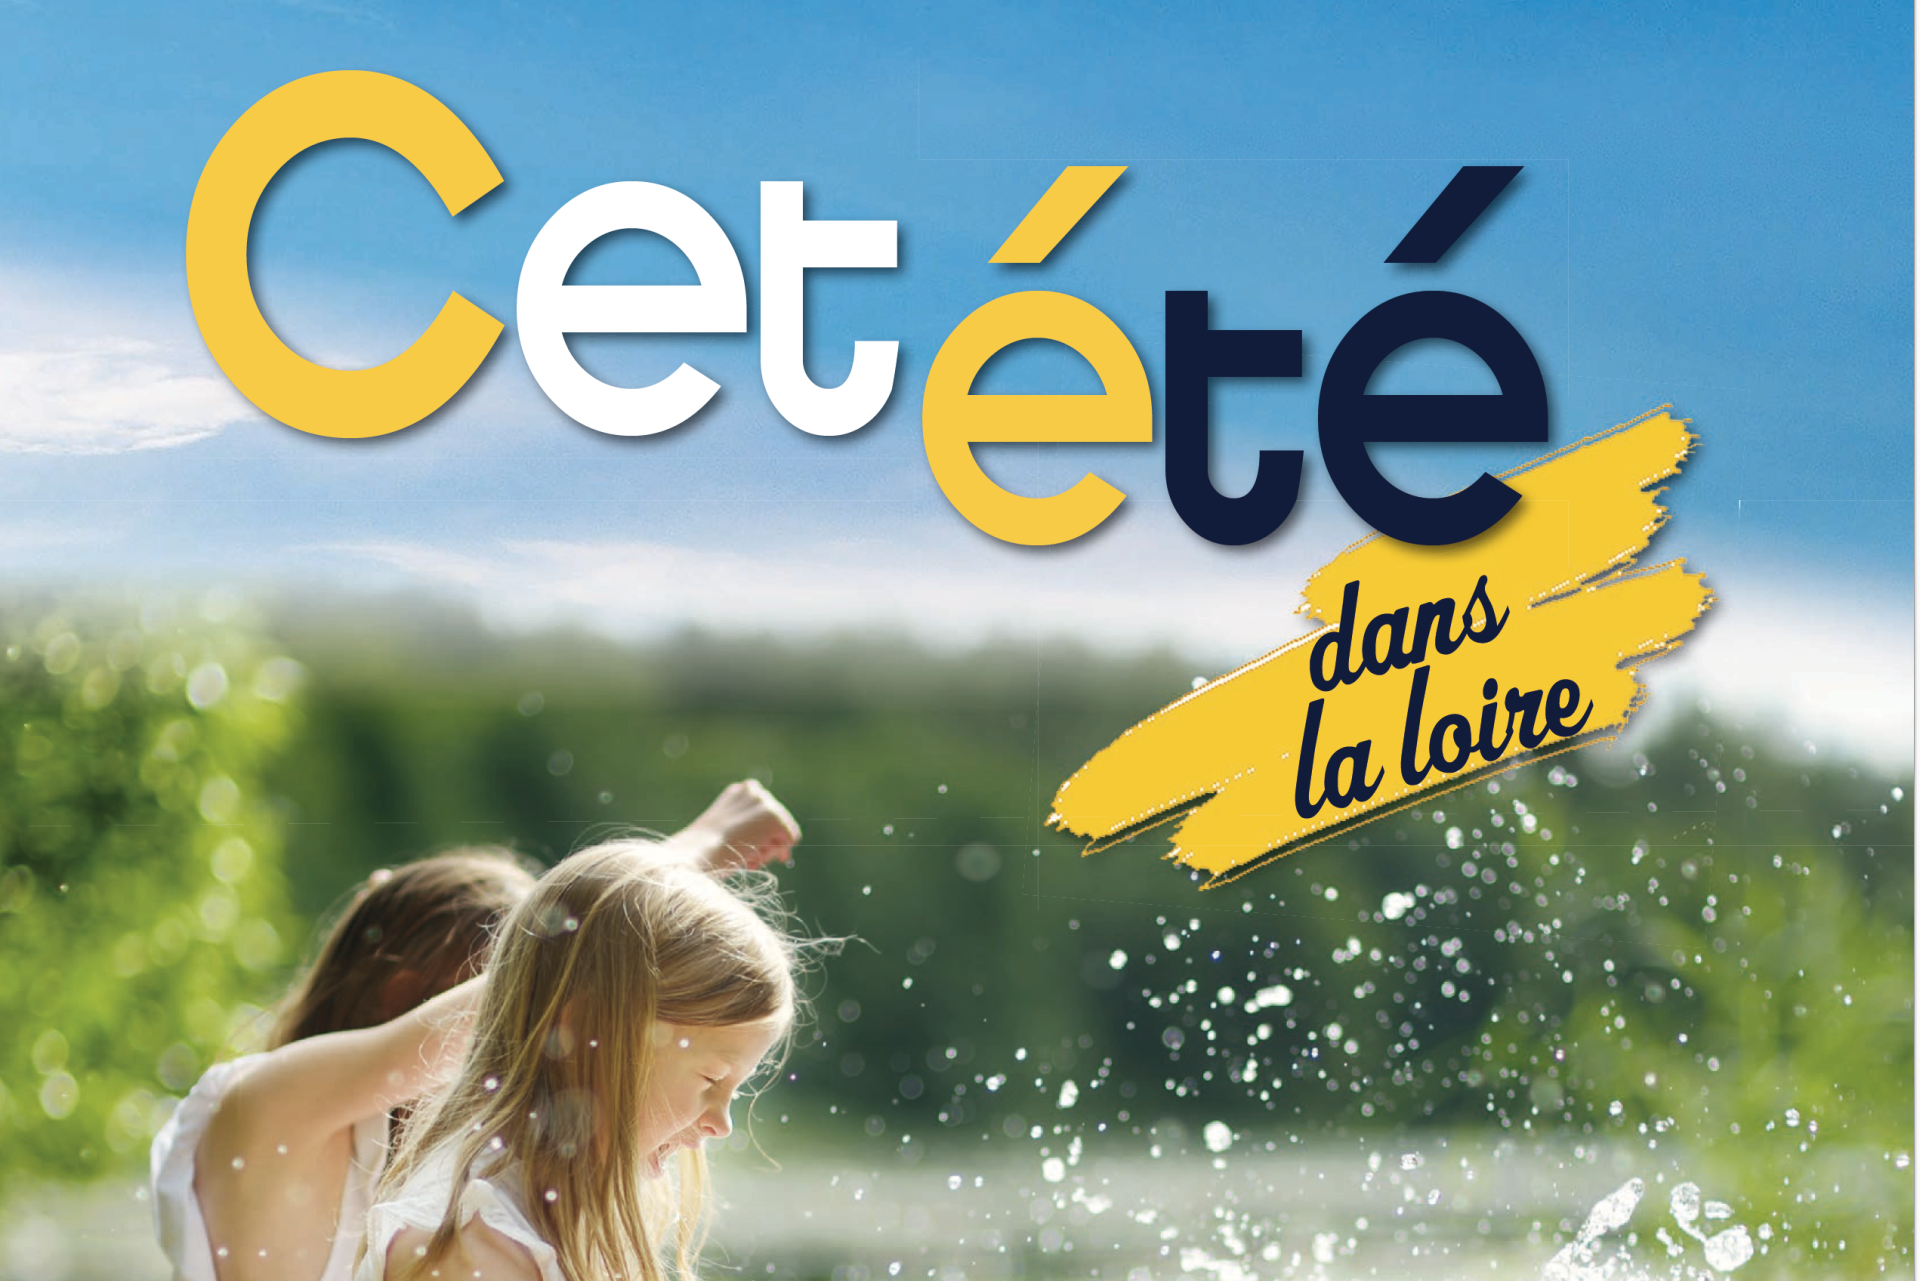 Téléchargez "Cet été dans la Loire" 2021